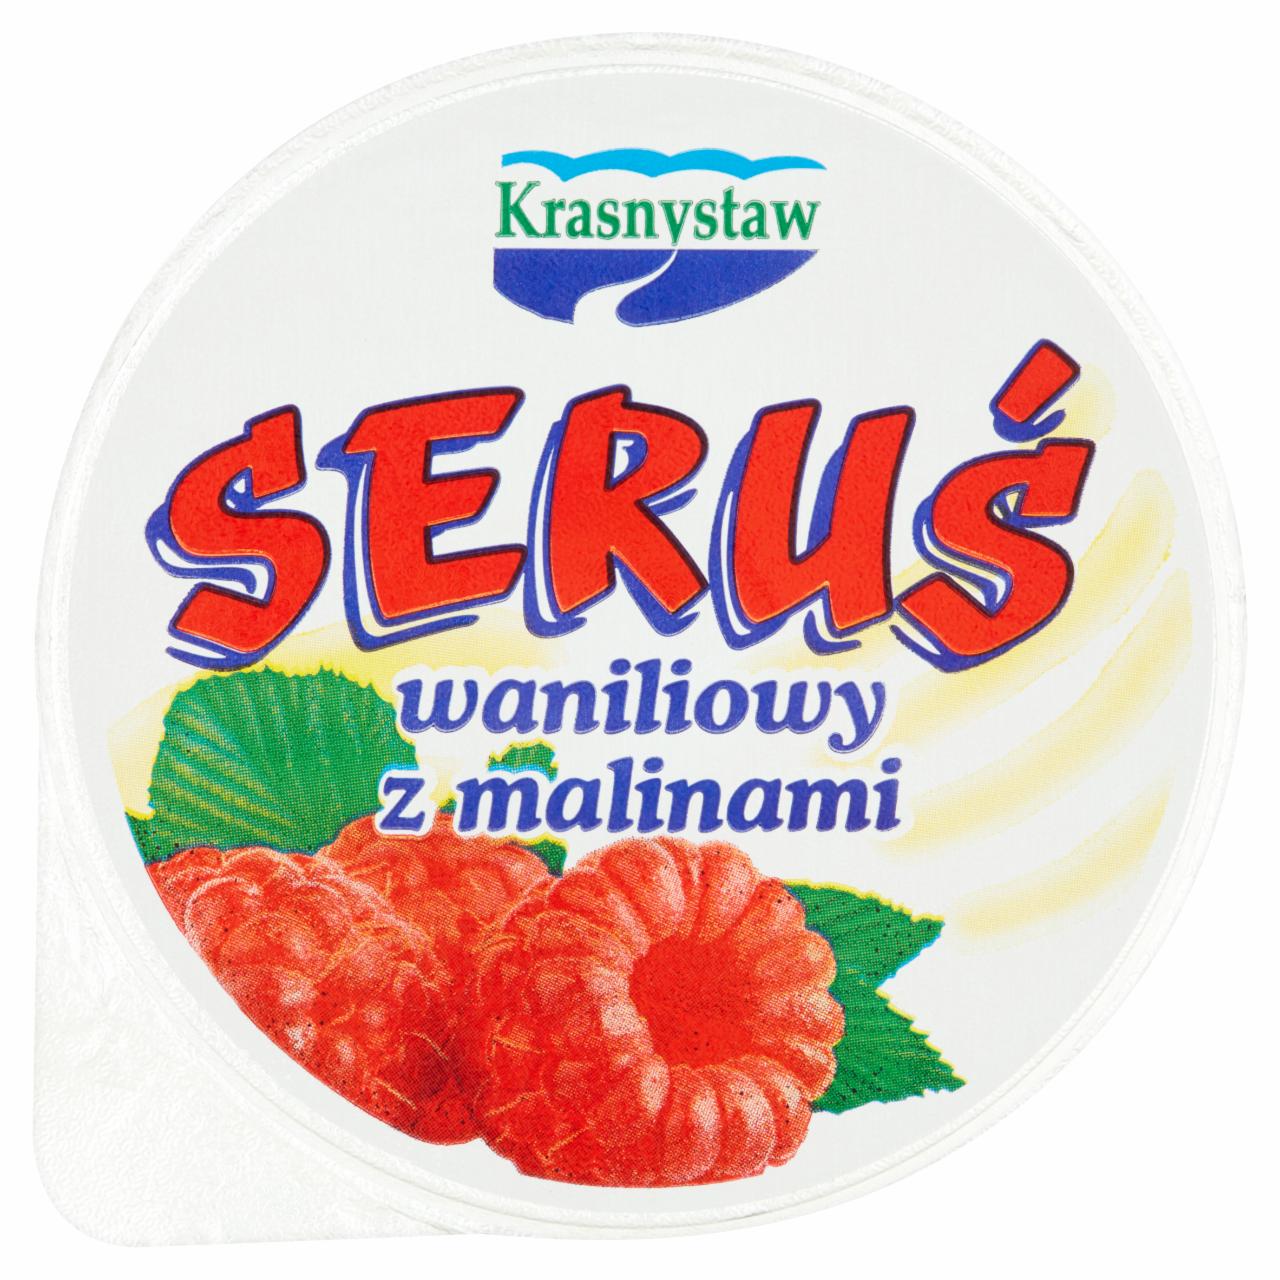 Zdjęcia - Krasnystaw Seruś Serek waniliowy z malinami 150 g